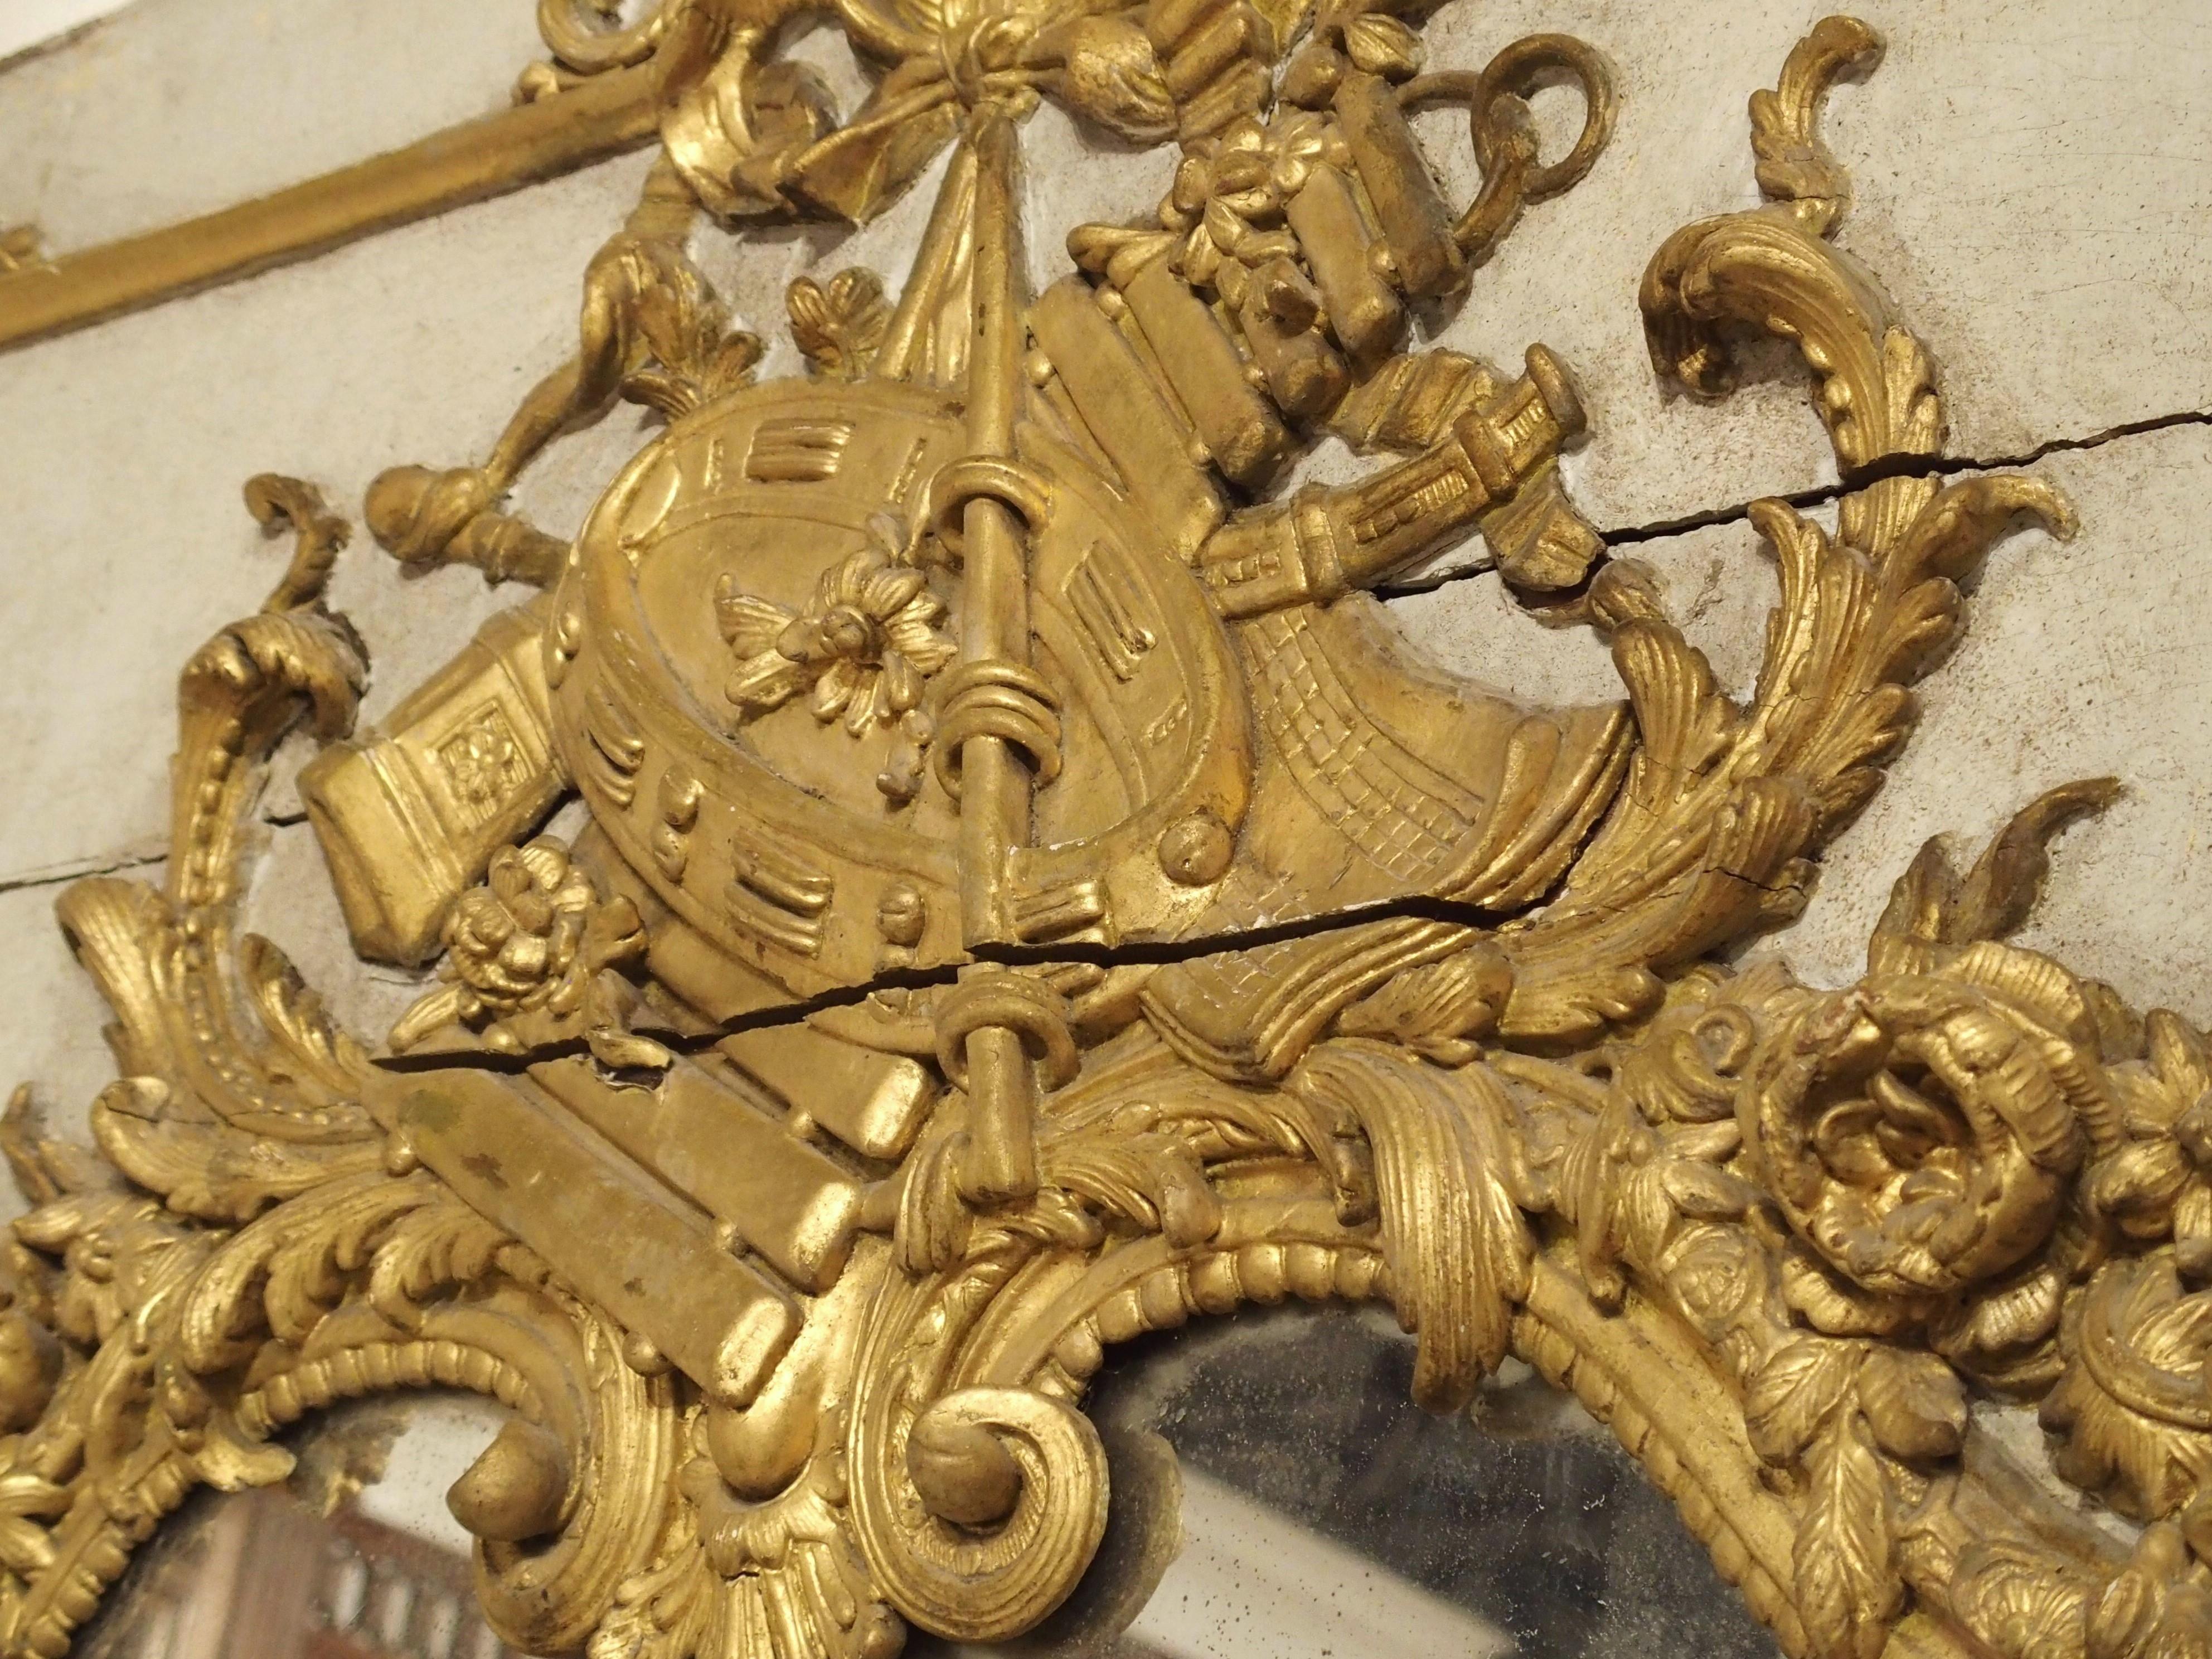 Dieser sehr große Trumeau-Spiegel wurde kürzlich auf dem Dachboden eines Schlosses in der Normandie, Frankreich, entdeckt. Der schöne Spiegel, der sowohl handbemalte als auch vergoldete Elemente aufweist, wurde um 1720 handgeschnitzt und ist somit